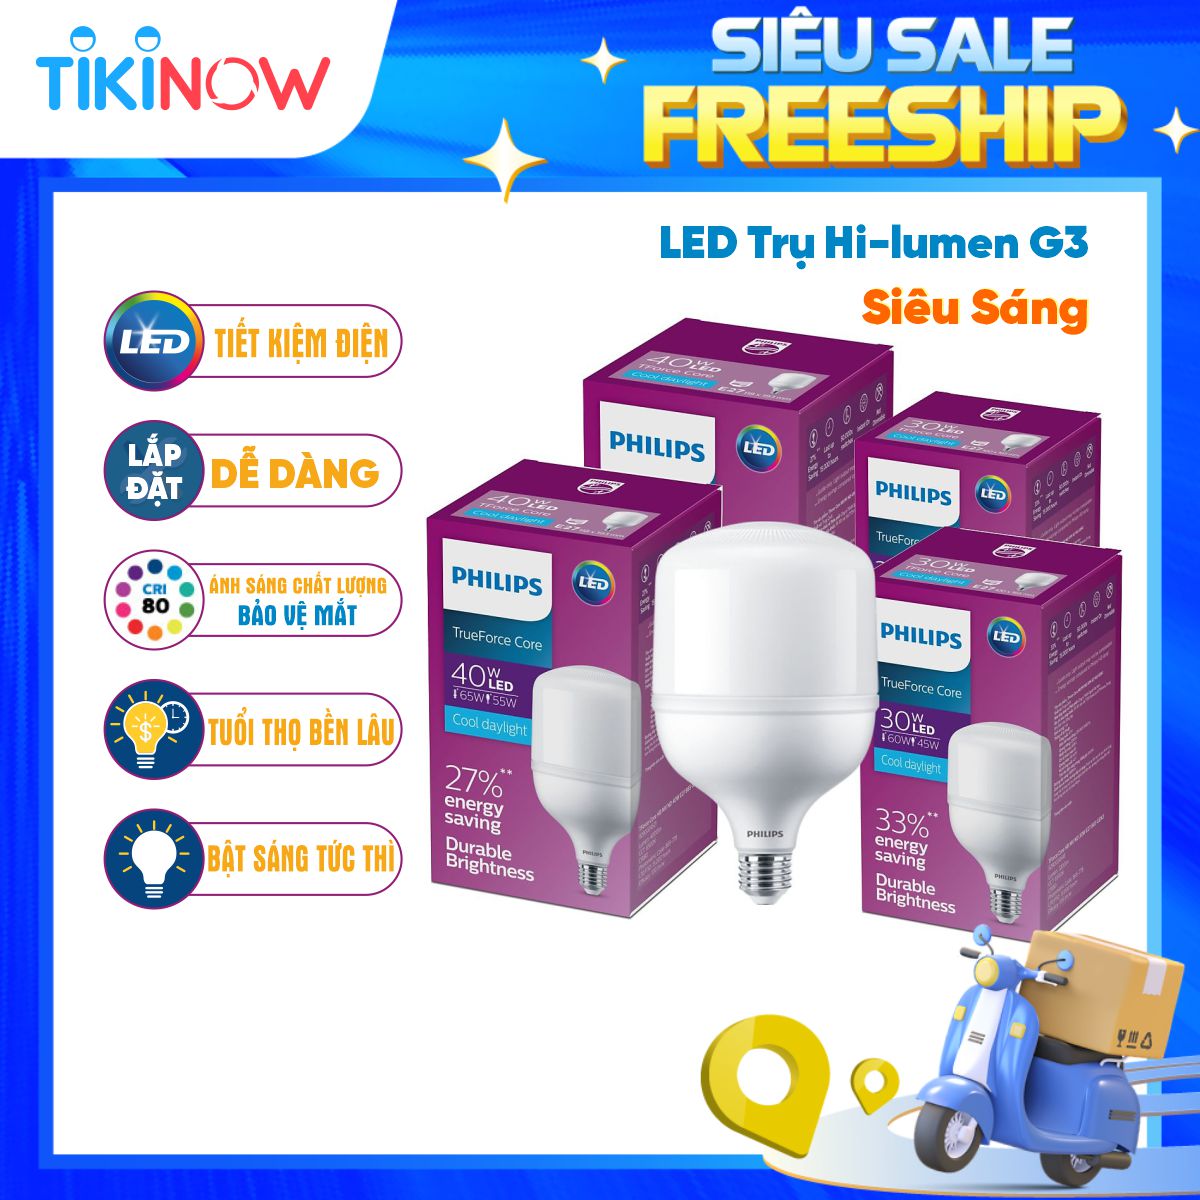 Bóng đèn LED trụ Hi-lumen G3 PHILIPS E27 - Độ sáng cao, tiết kiệm điện, chất lượng ánh sáng vượt trội - Hàng Chính Hãng 